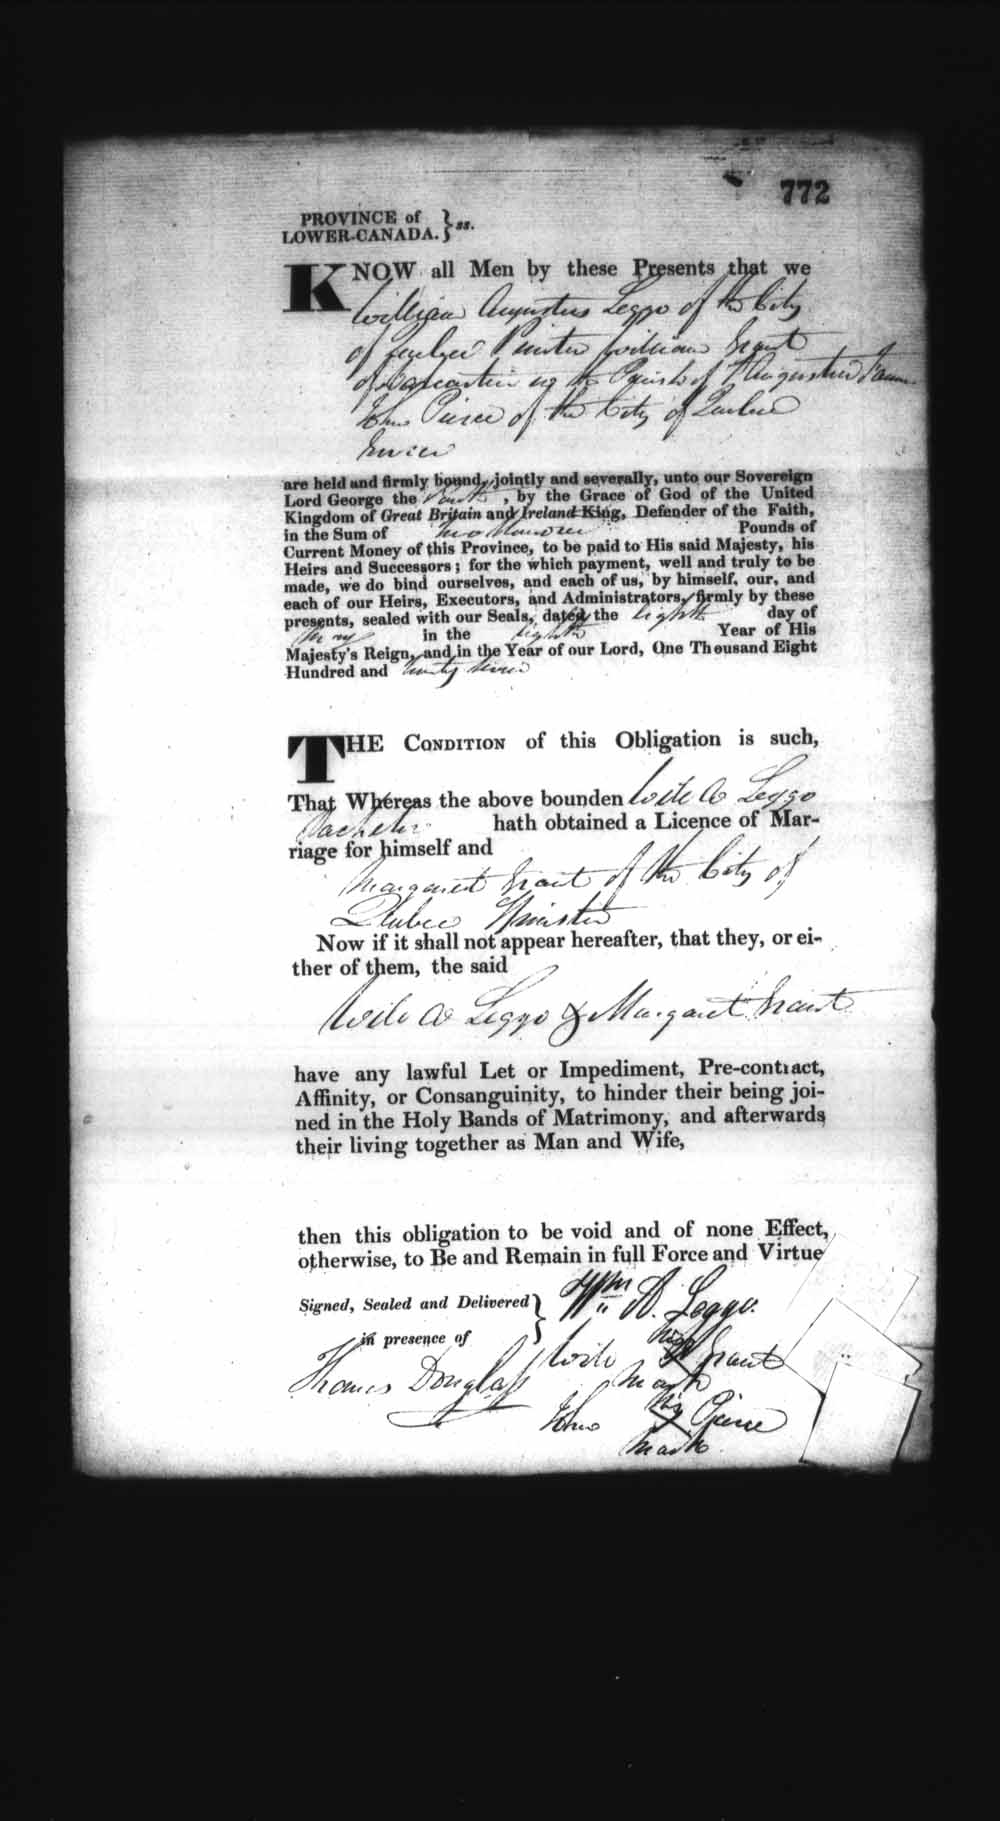 Page numérisé de Cautionnements de mariages pour le Haut-Canada et le Bas-Canada (1779-1865) pour l'image numéro: e008236845